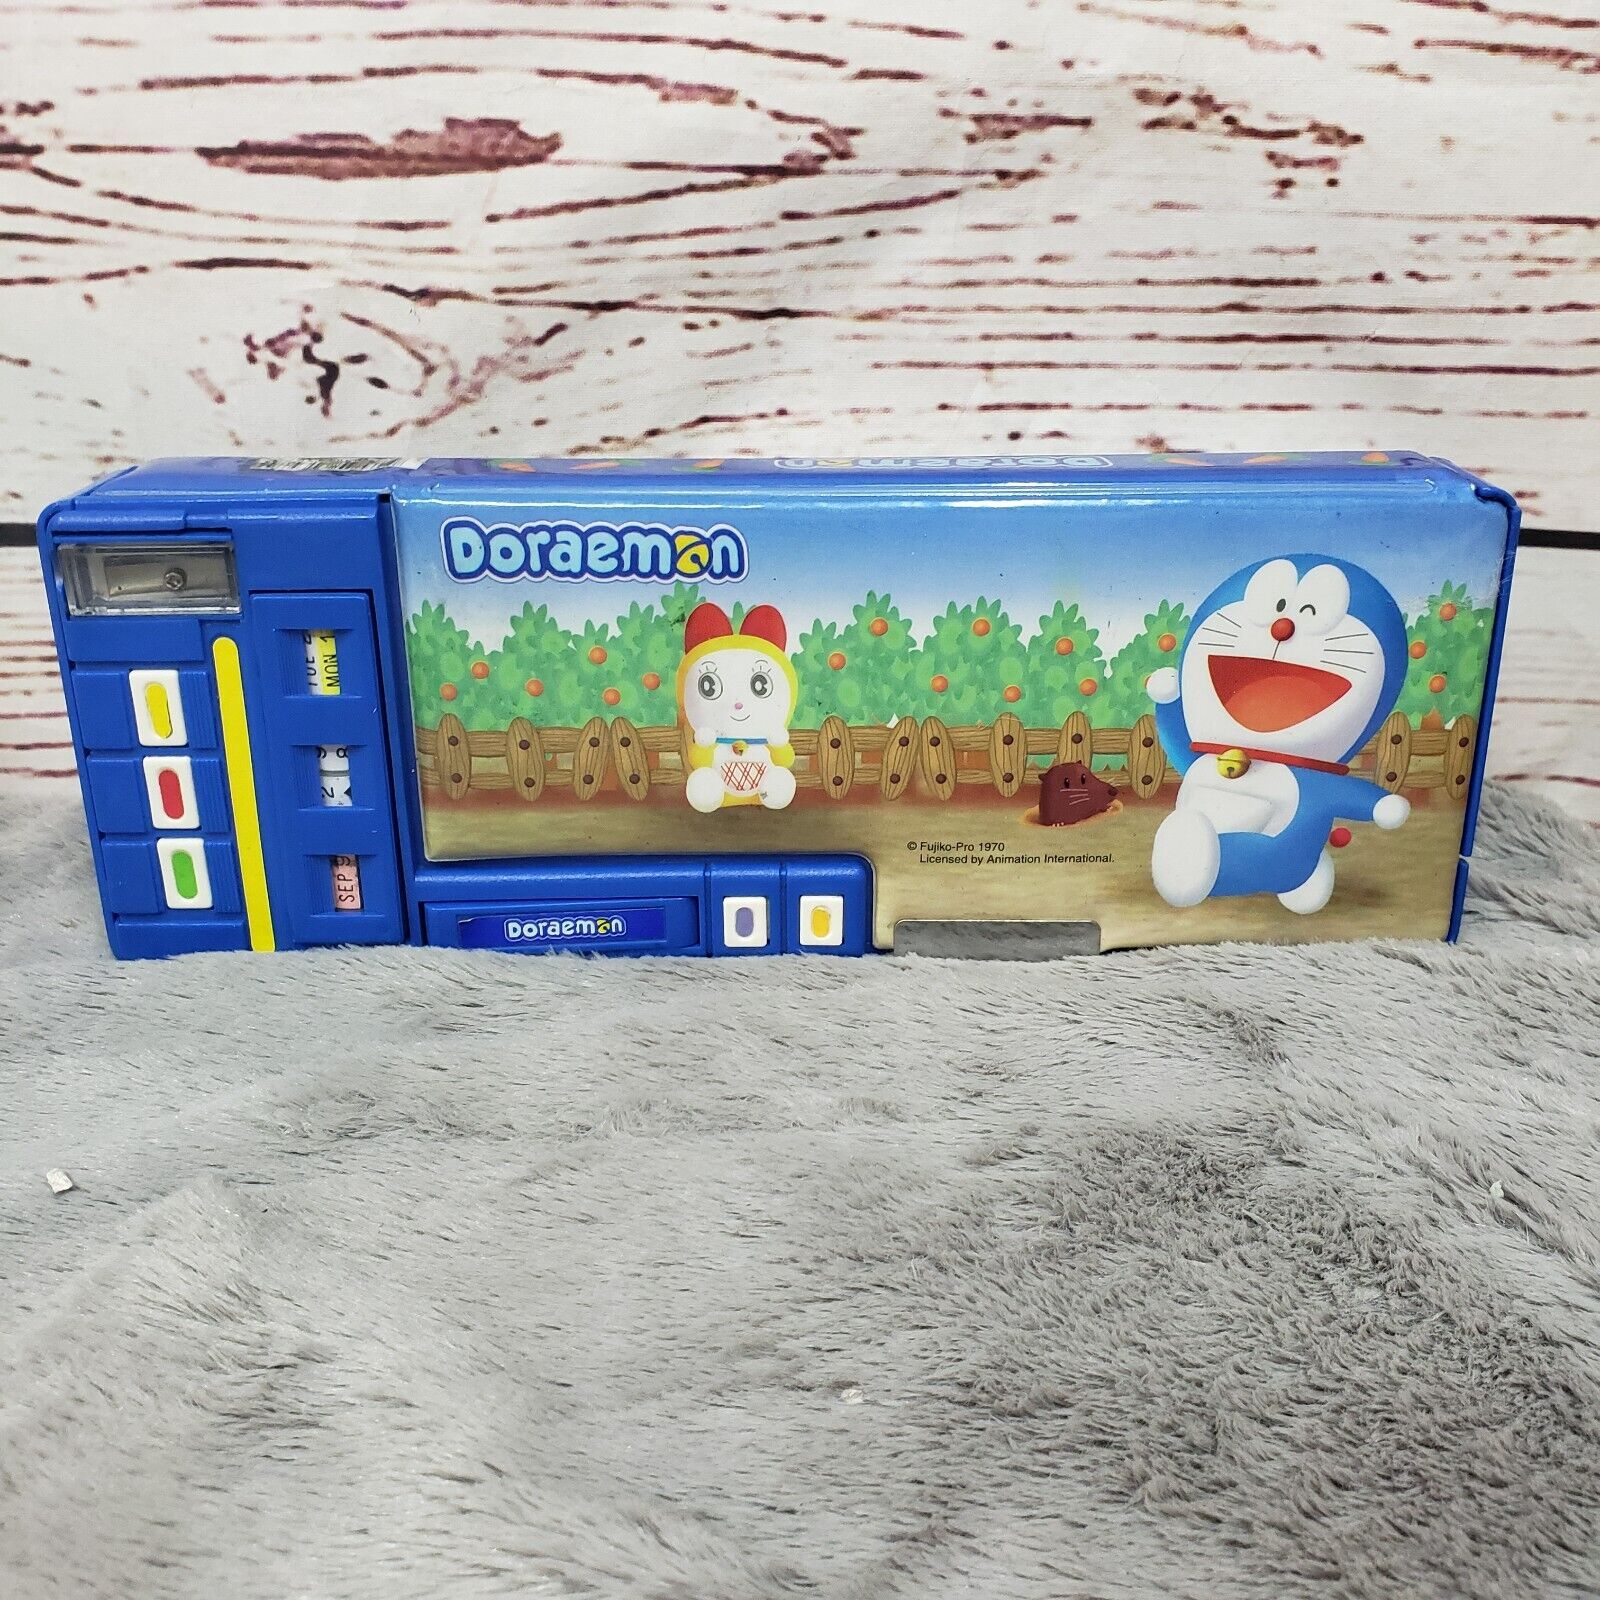 Doraemon Robot Cat Multi Functional Case Pencil Pen Holder Box w/gadgets